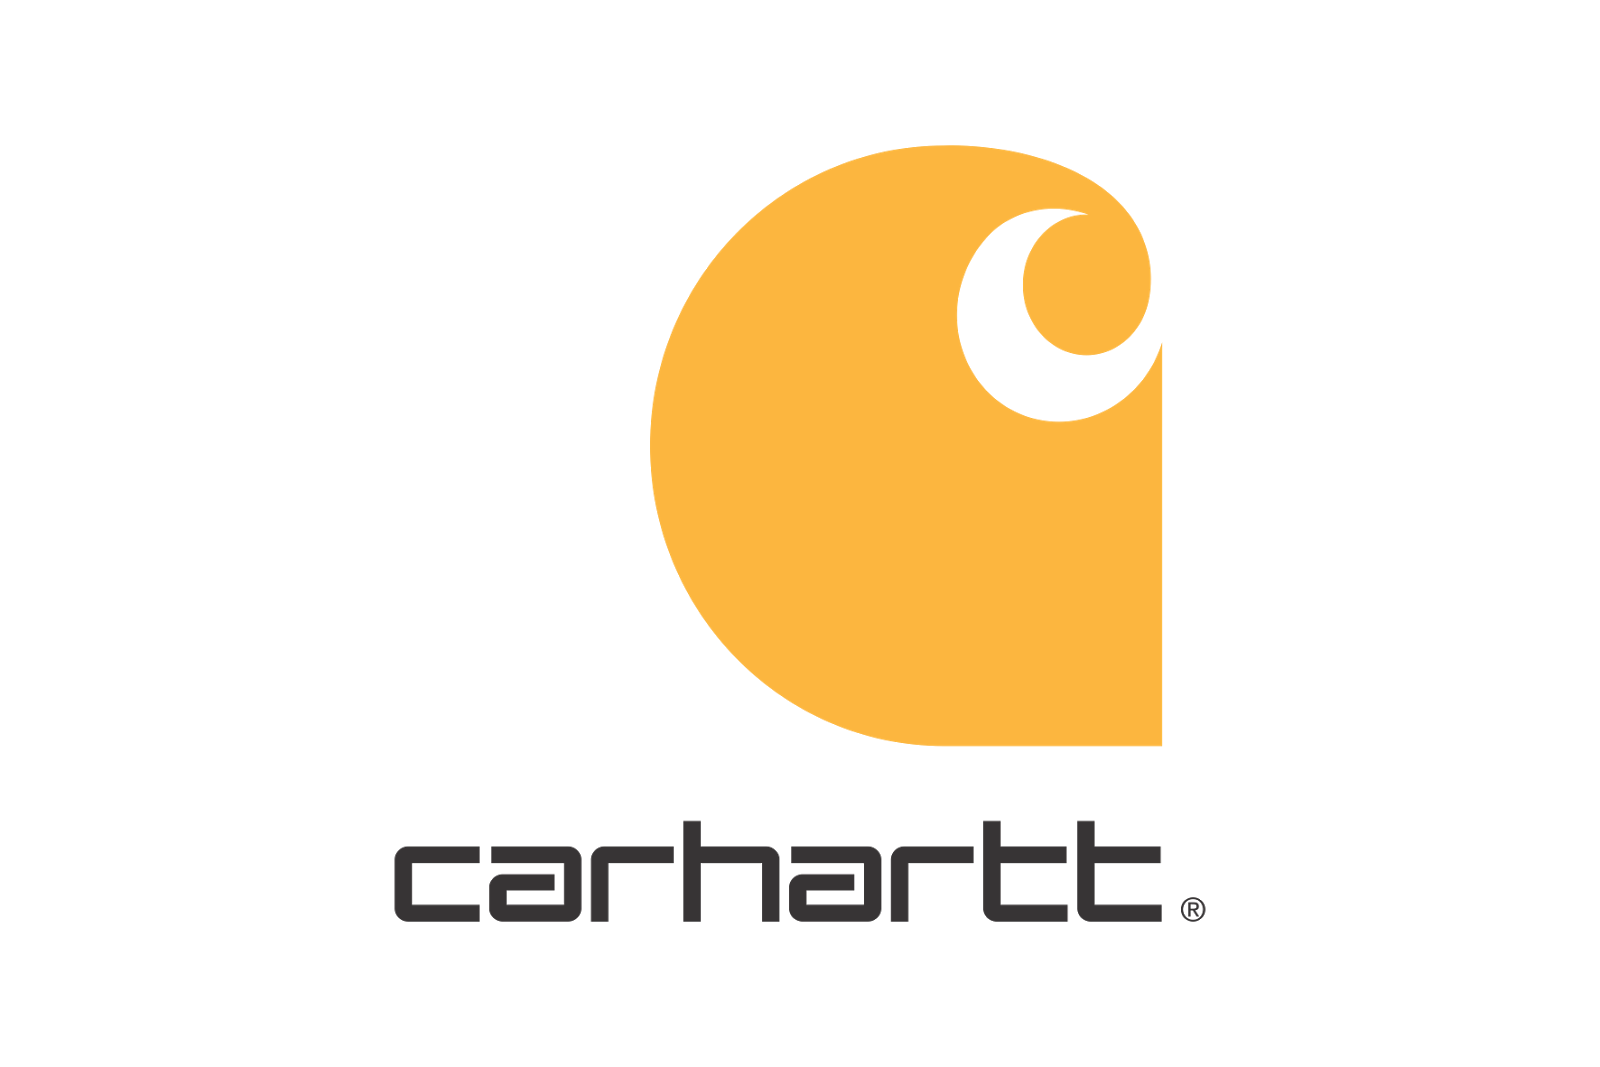 Carhartt Logos